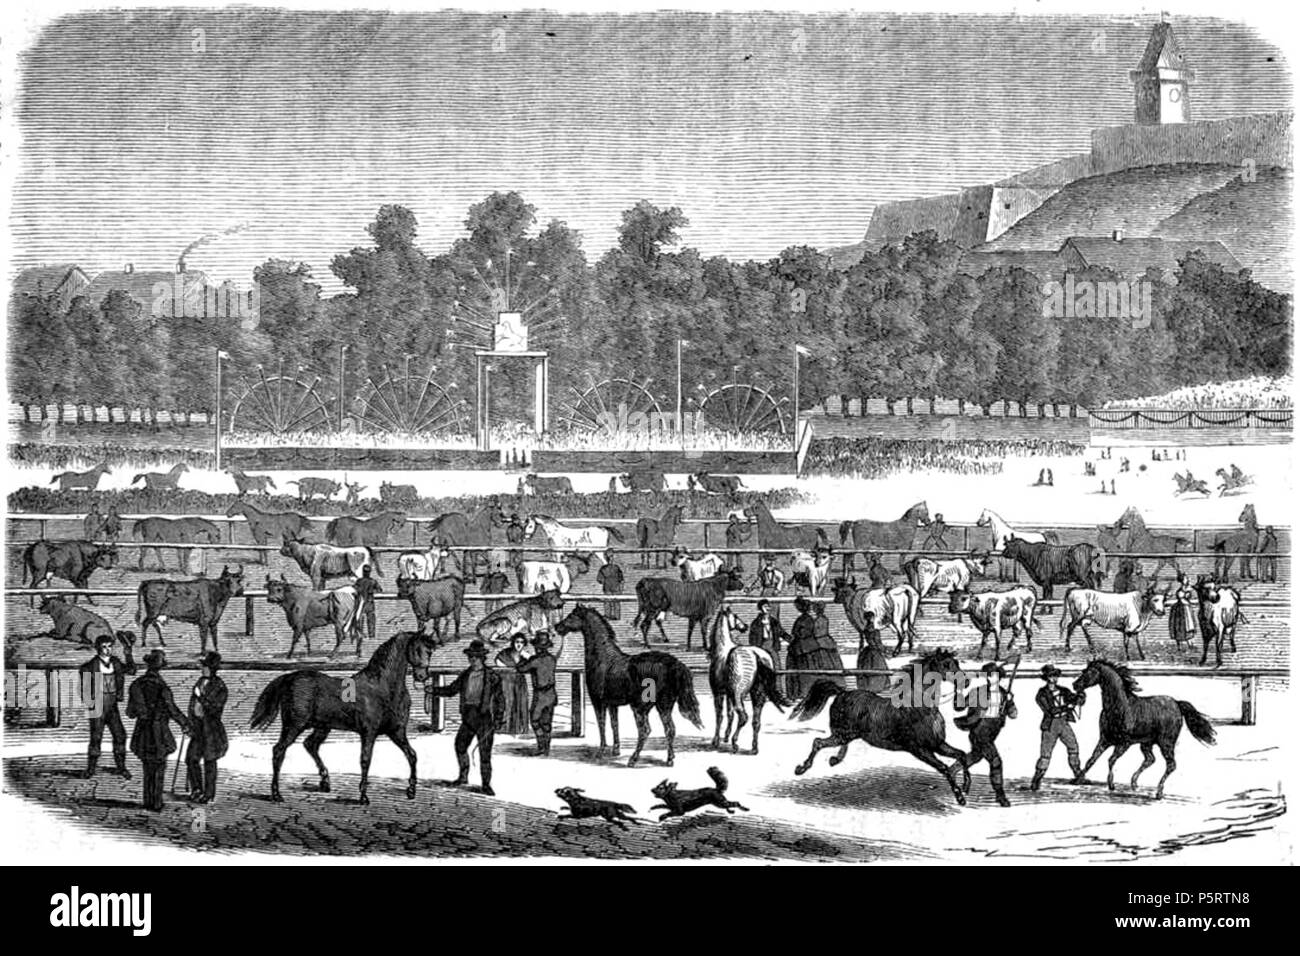 N/A. Landwirthschaftliche Ausstellung in Gratz. 1863. Unbekannt 414 Das festliche Jahr img 311 Landwirthschaftliche Ausstellung in Gratz Stockfoto